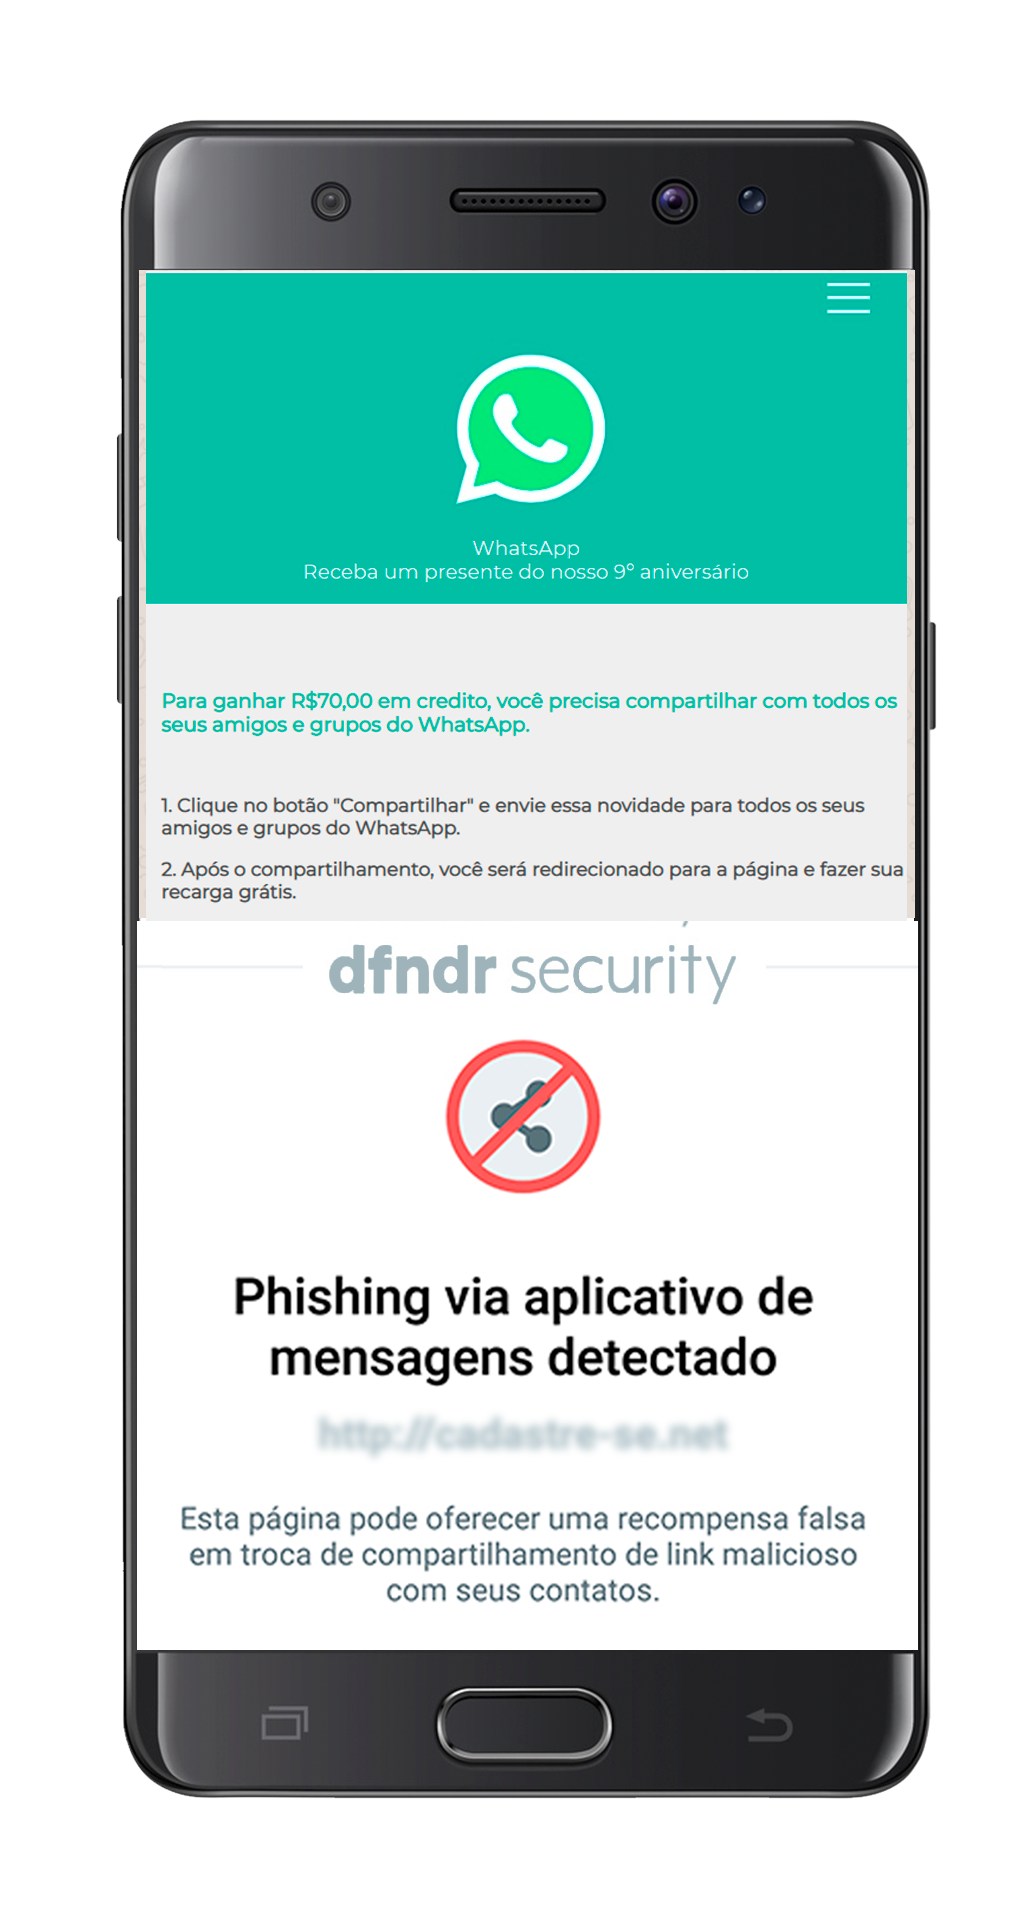 exemplo de detecção de phishing feita pelo dfndr security